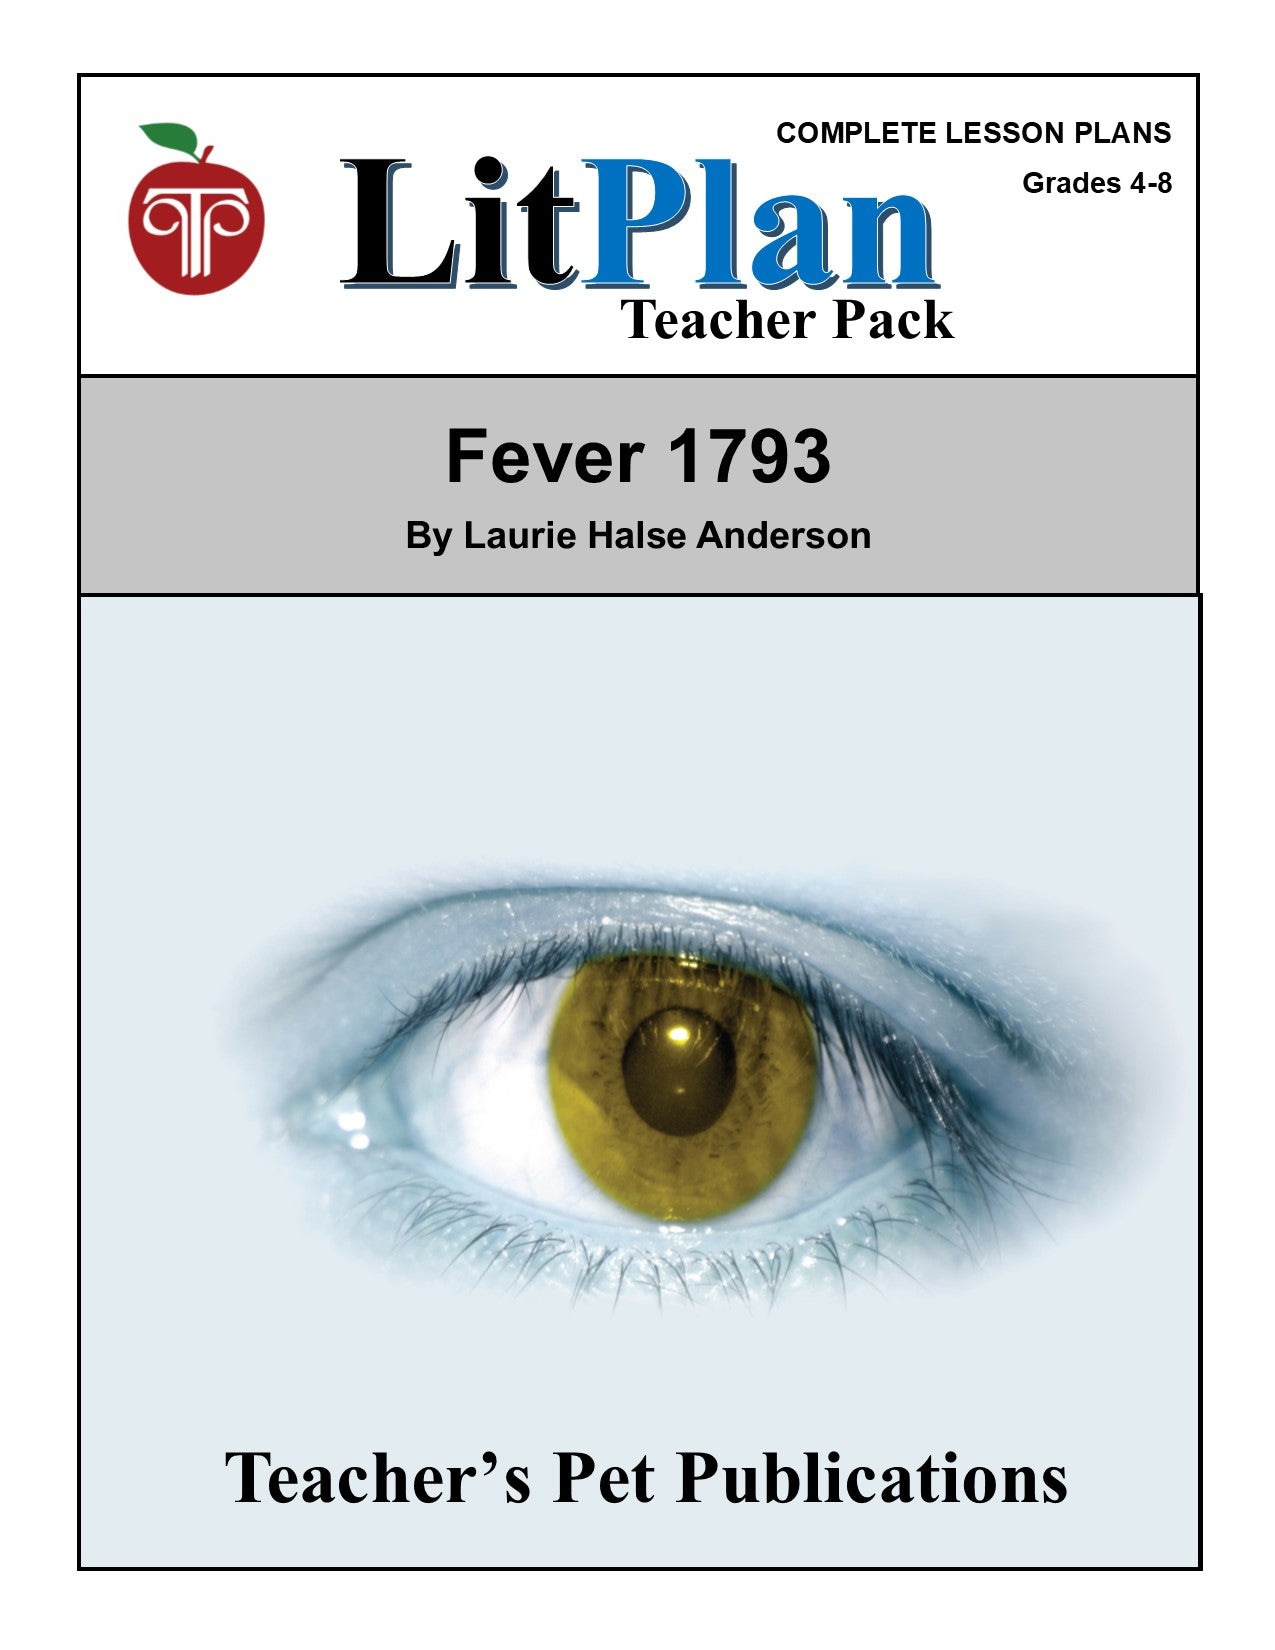 Fever 1793: LitPlan Teacher Pack Grades 4-8